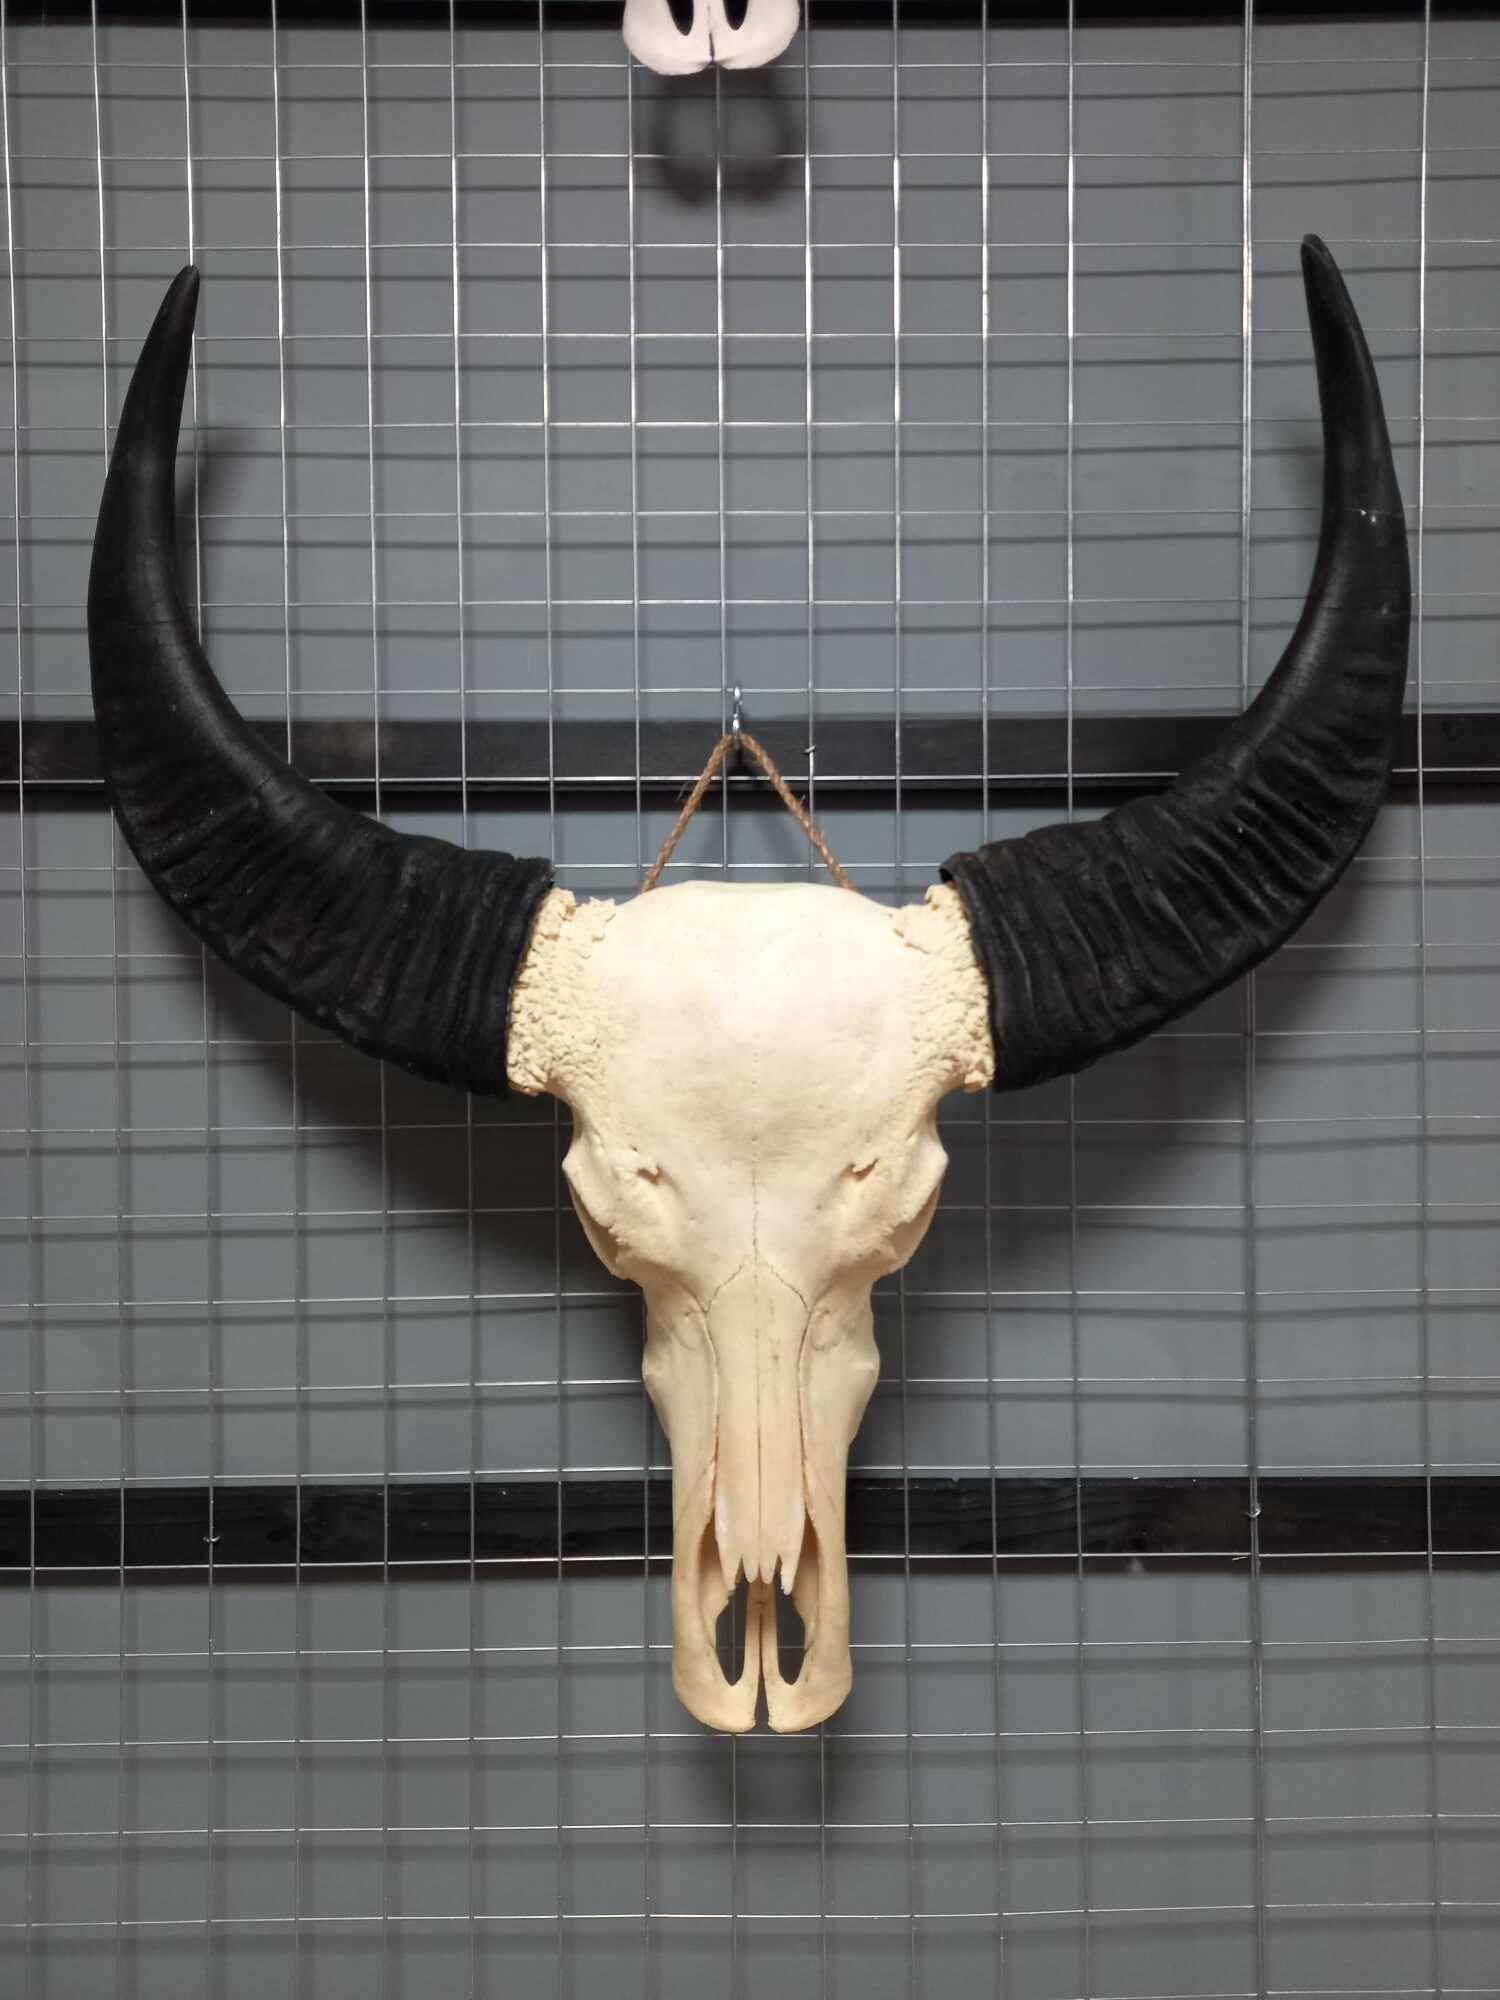 Waterbuffel schedel 4